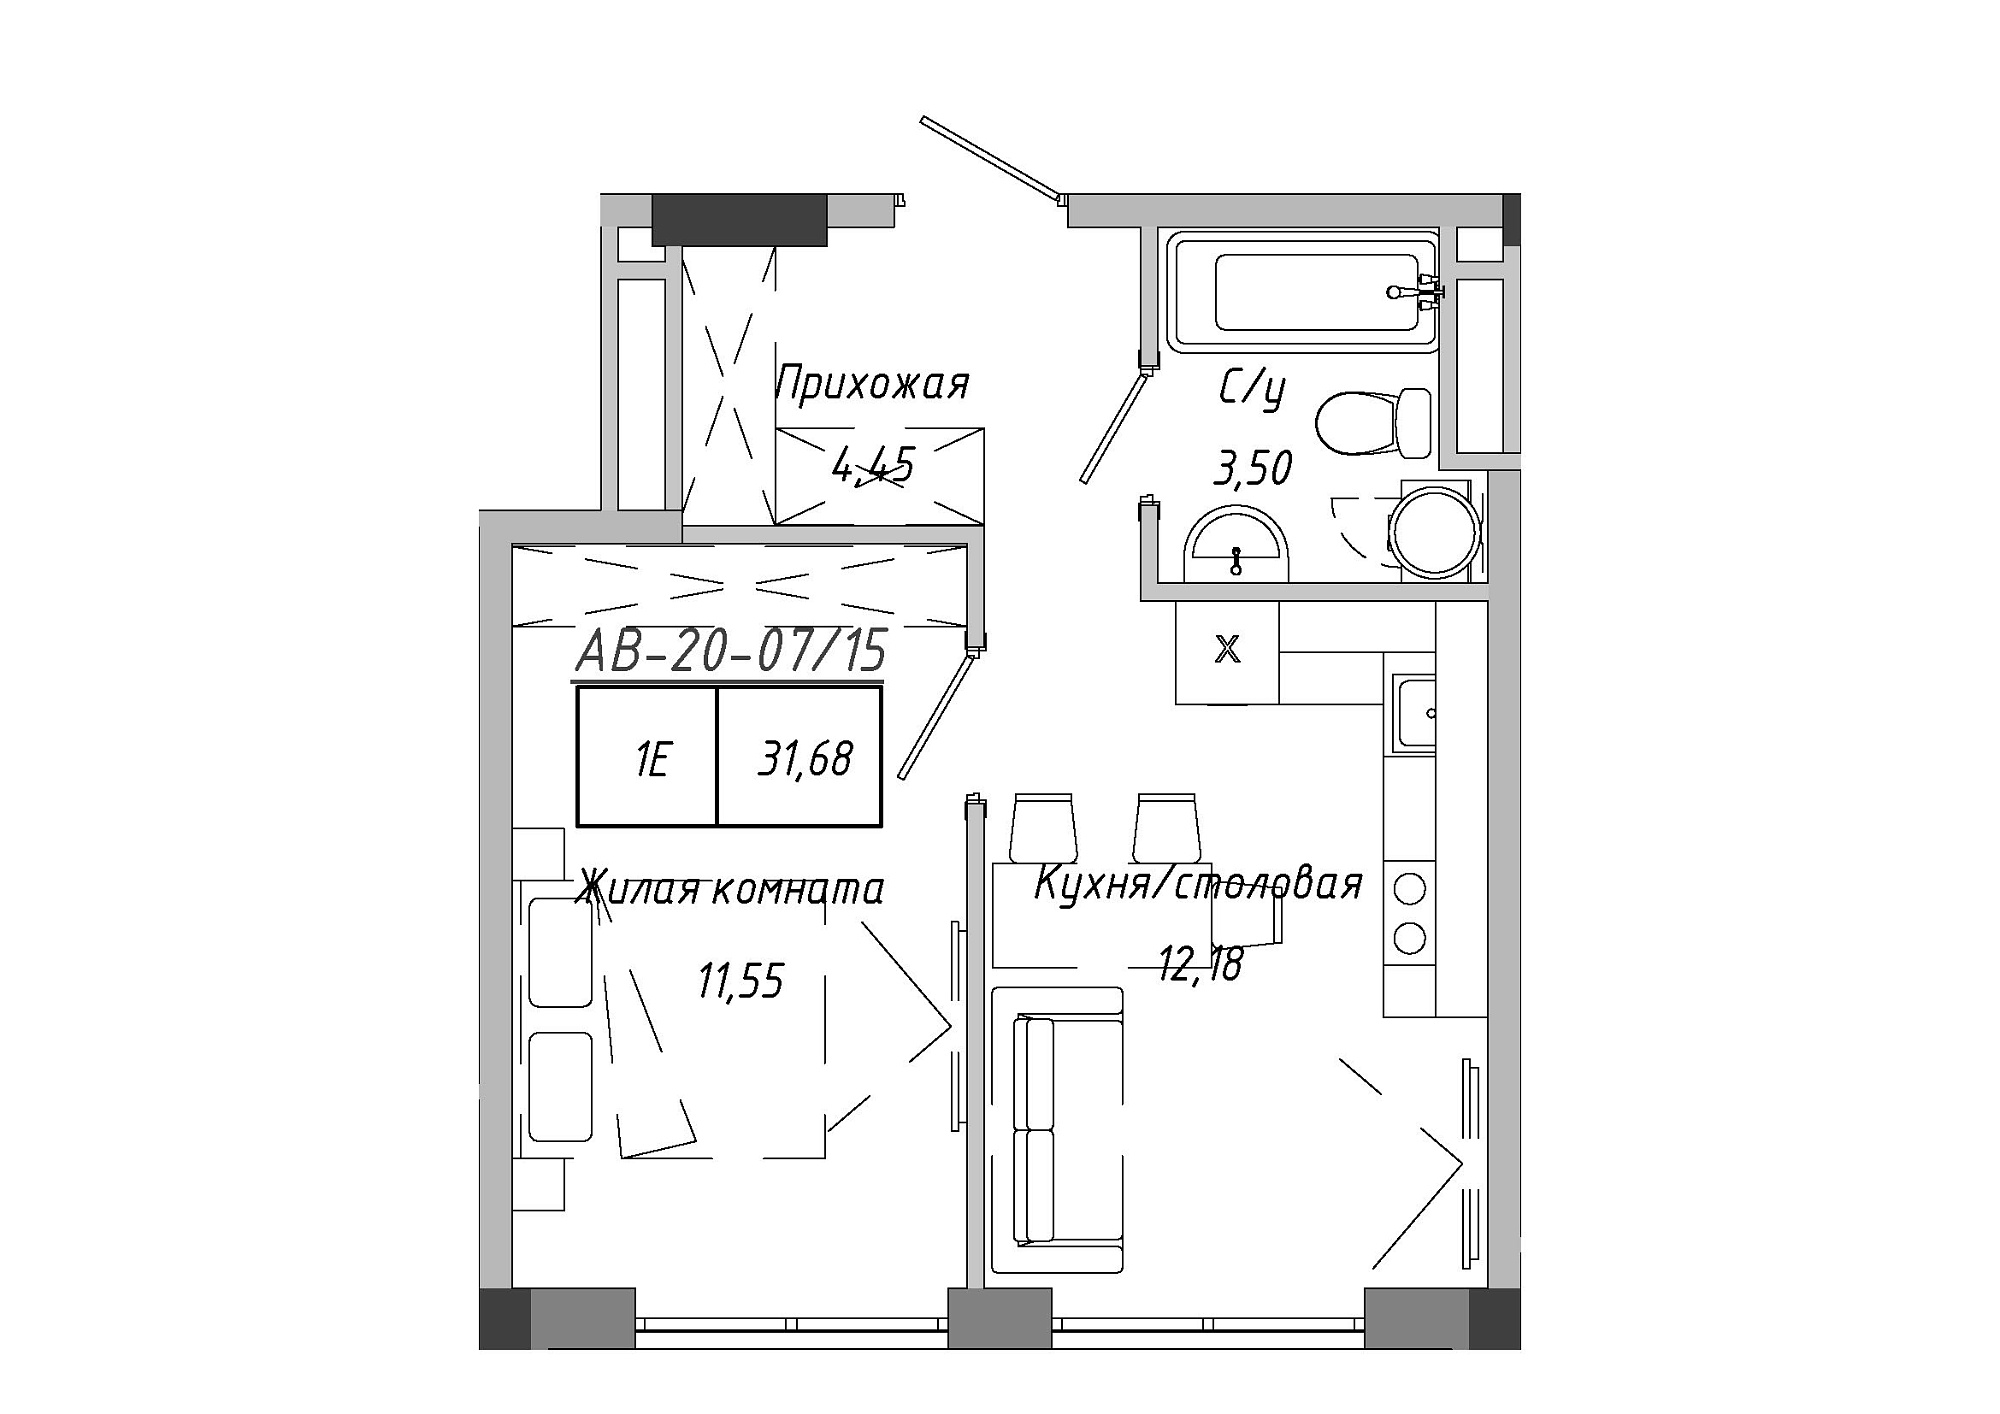 Планировка 1-к квартира площей 31.51м2, AB-20-07/00015.